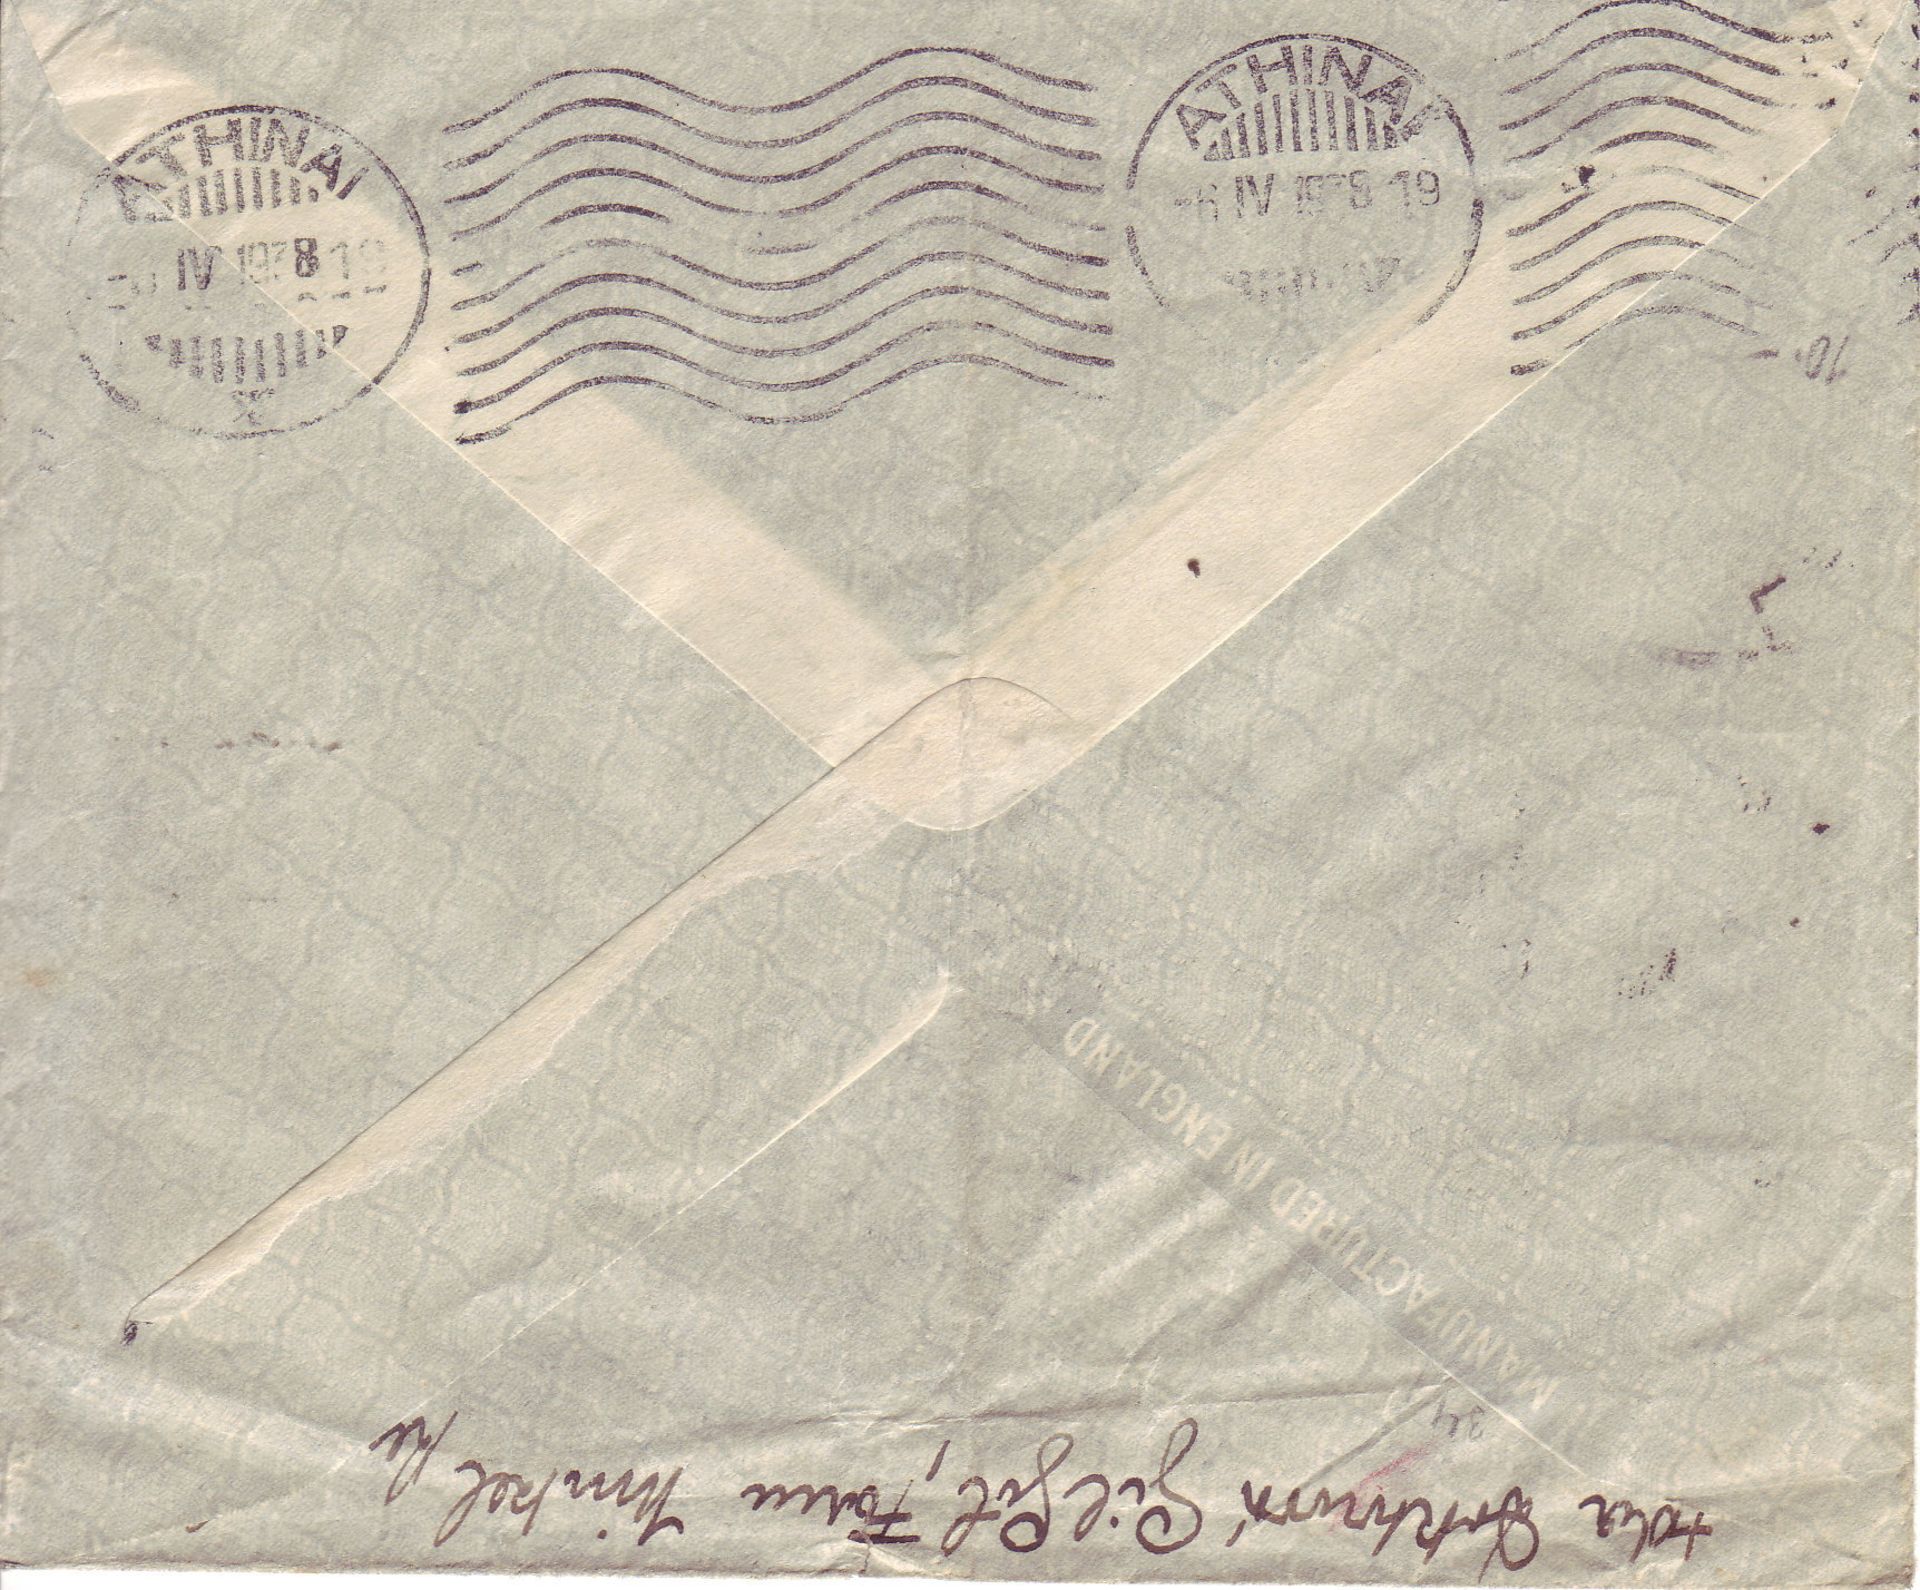 Kenia / Tansania 1938, Luftpost - Brief von Gil Gil nach Prag. Mit Transitstempel Athinai.>/de> - Image 2 of 2